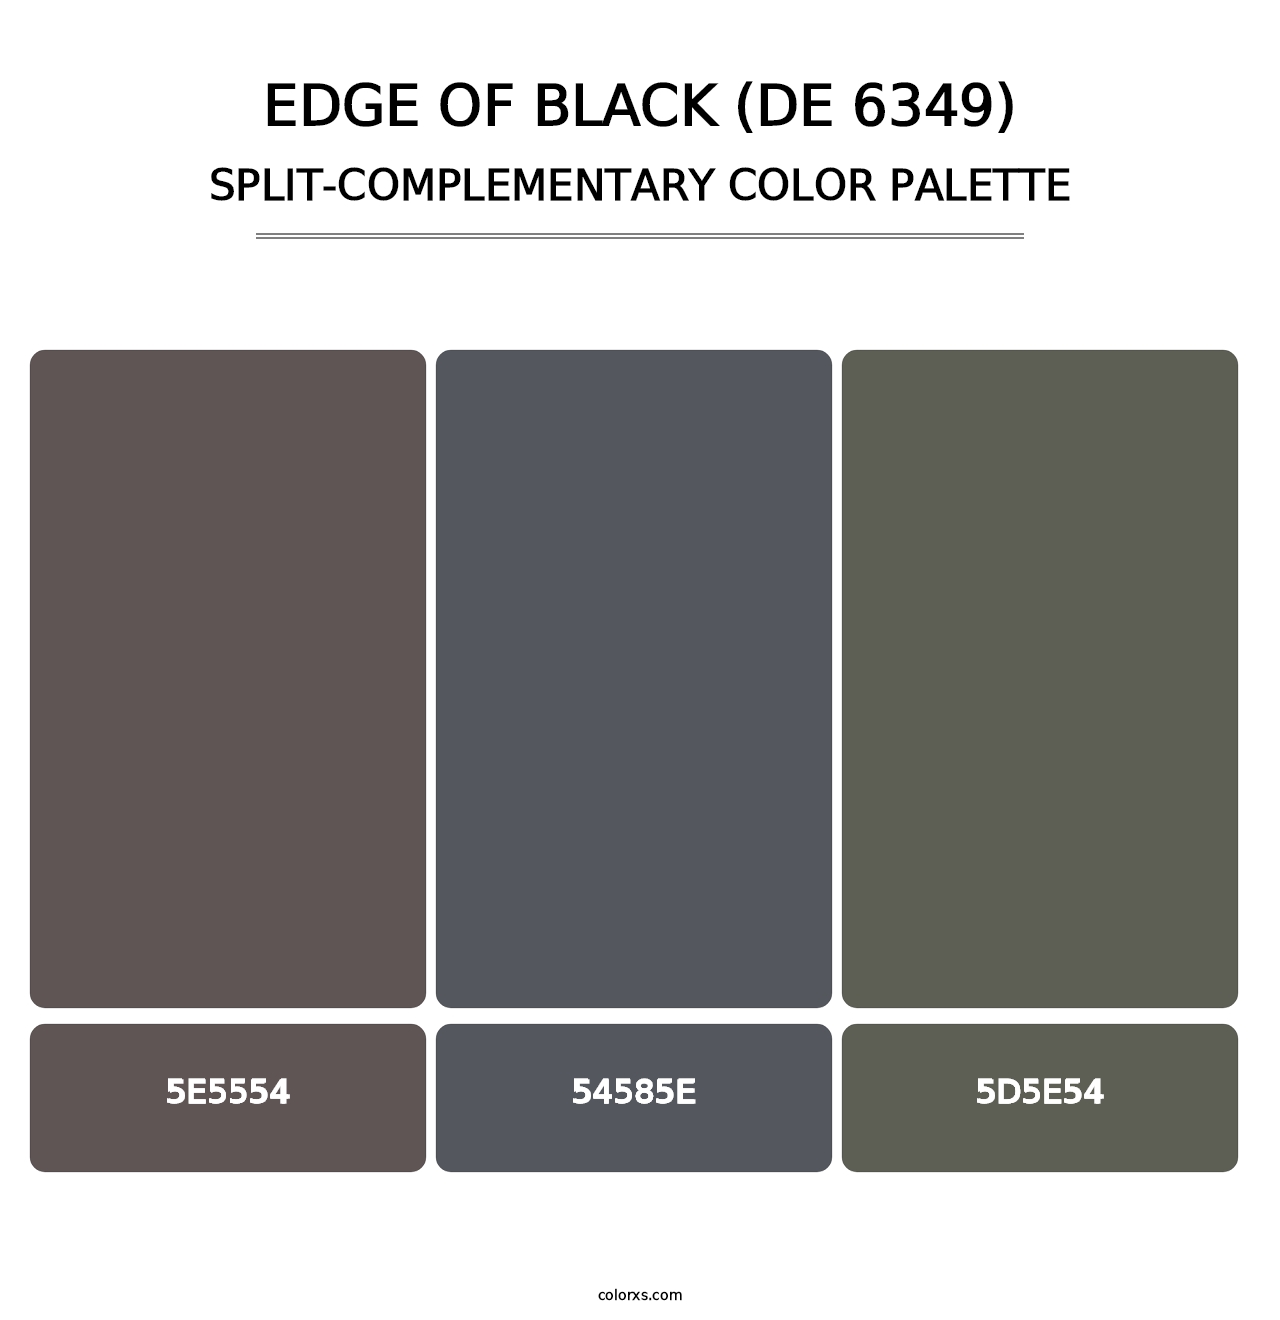 Edge of Black (DE 6349) - Split-Complementary Color Palette